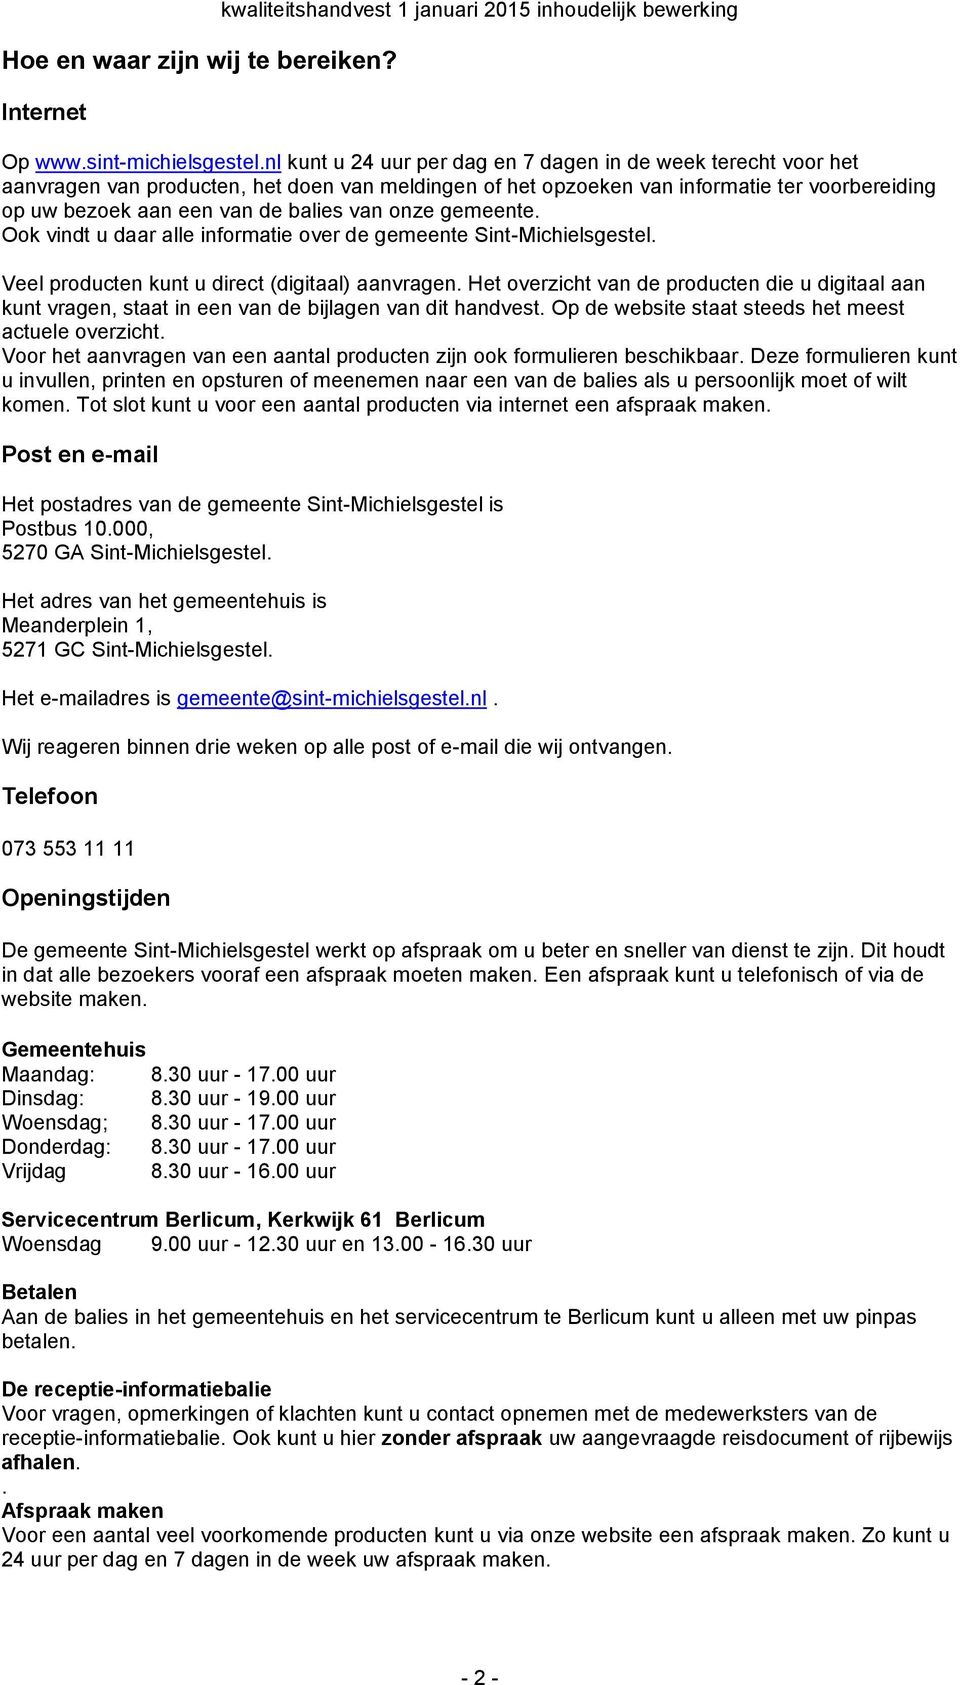 onze gemeente. ok vindt u daar alle informatie over de gemeente Sint-Michielsgestel. Veel producten kunt u direct (digitaal) aanvragen.